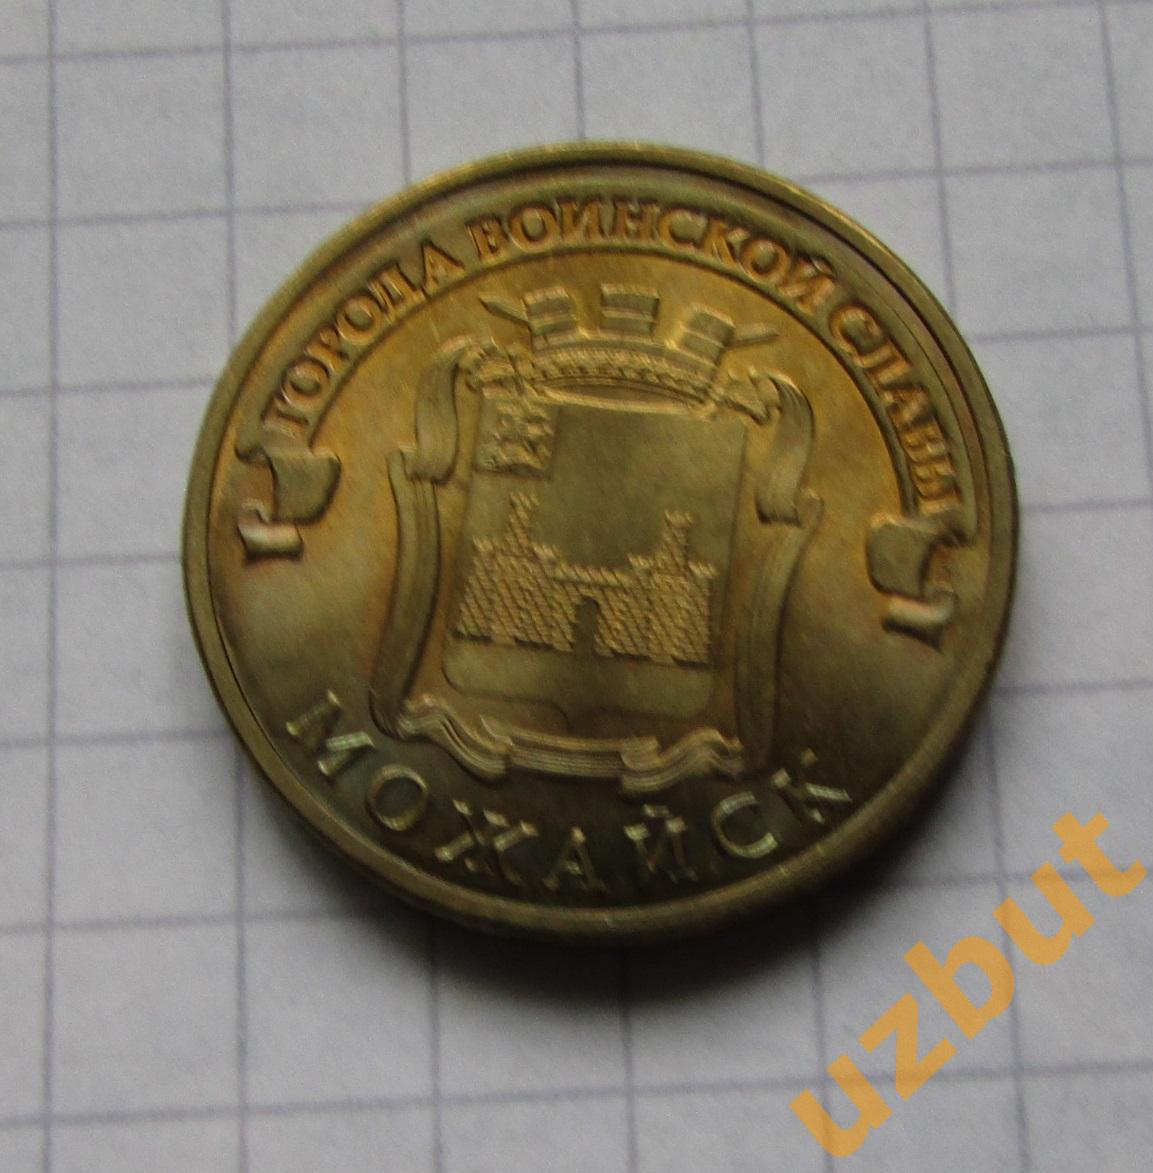 10 рублей РФ 2015 ГВС Можайск